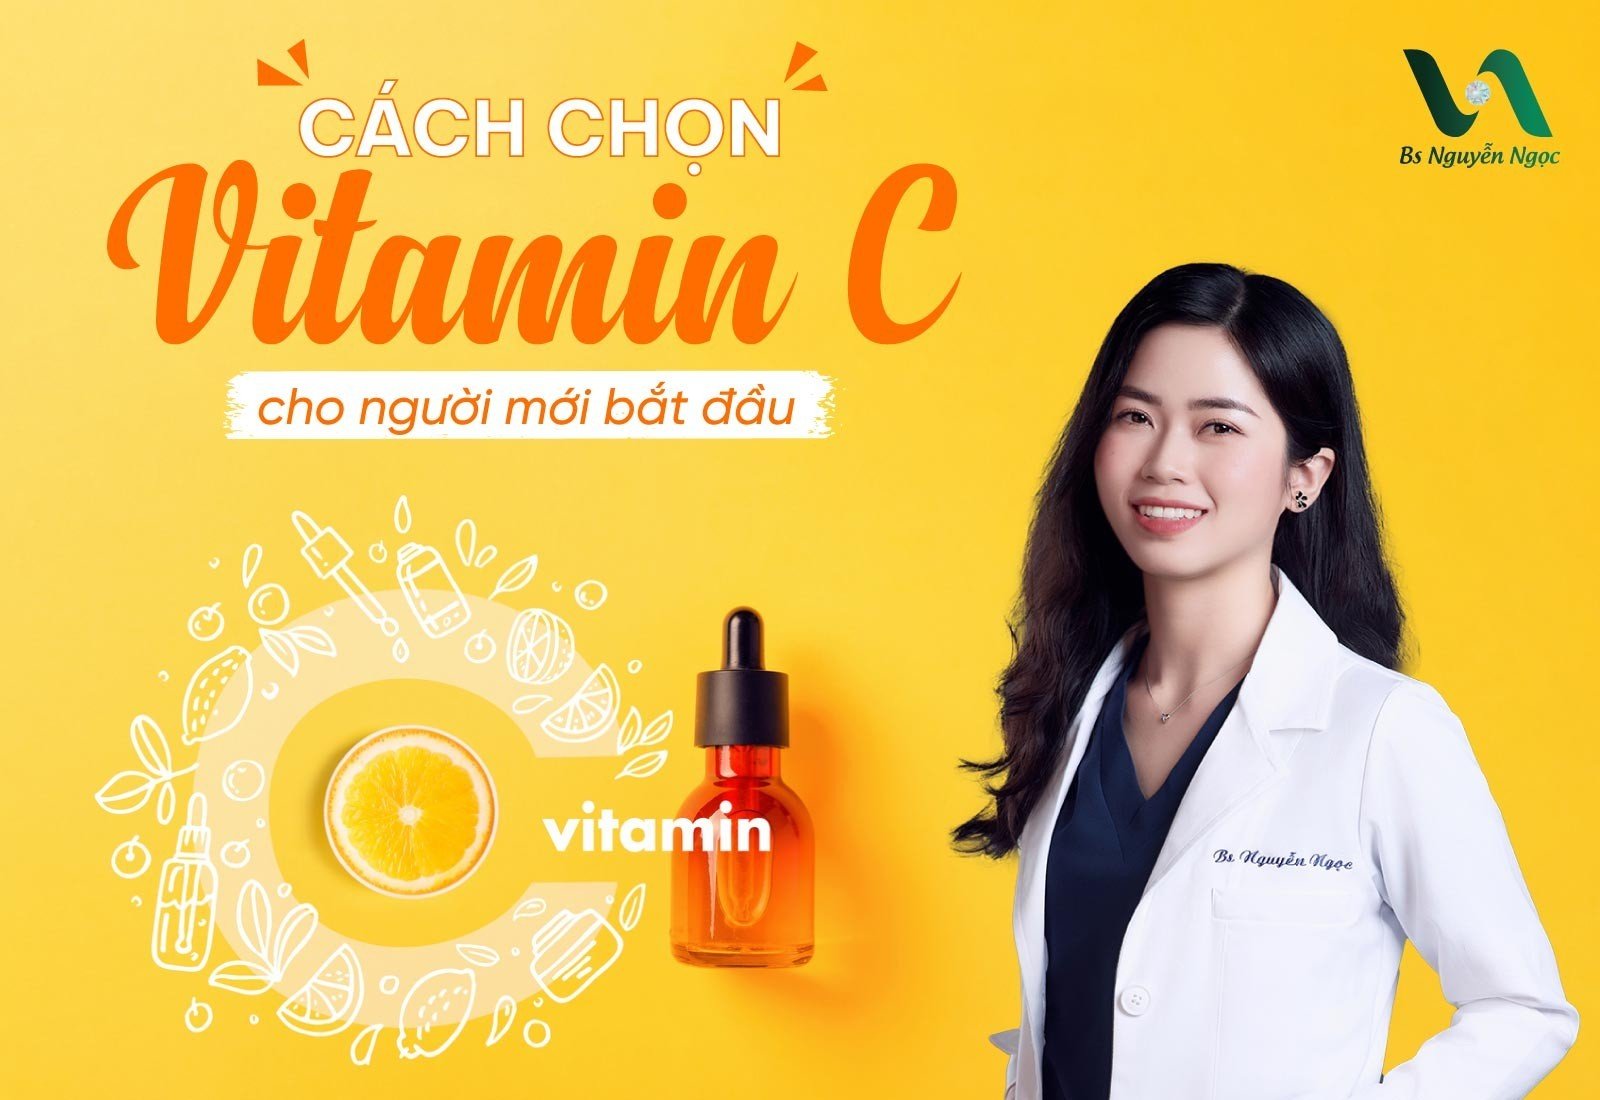 Cách chọn Serum Vitamin C cho người mới bắt đầu